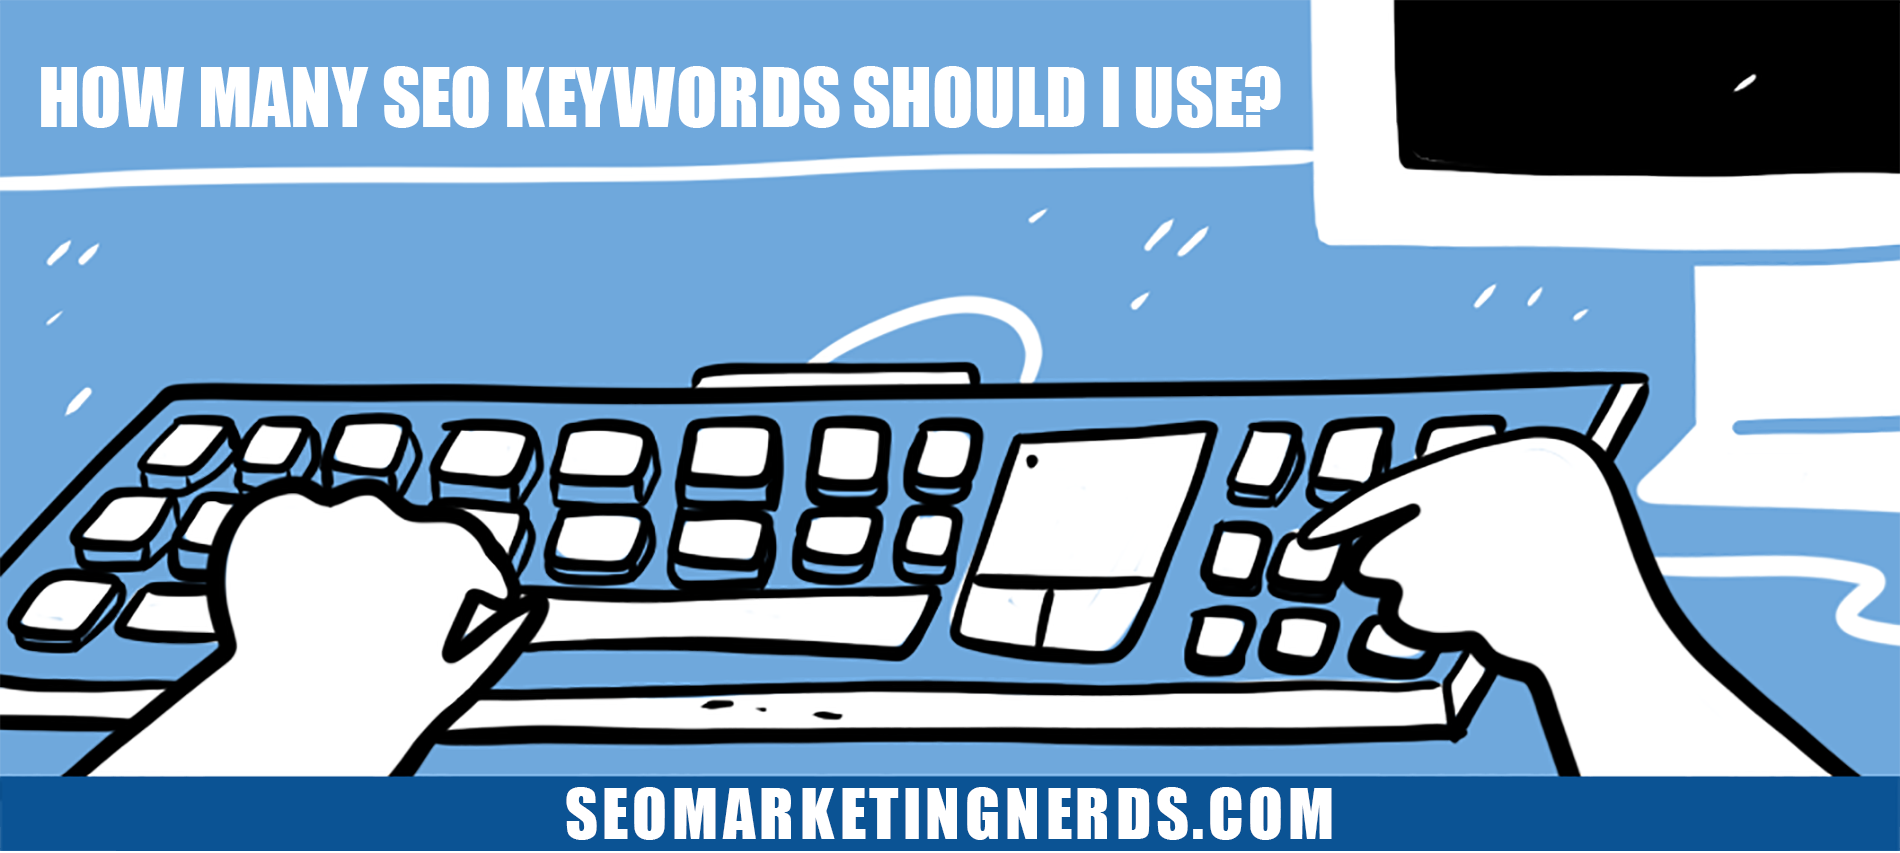 How Many SEO Keywords Should I Use?